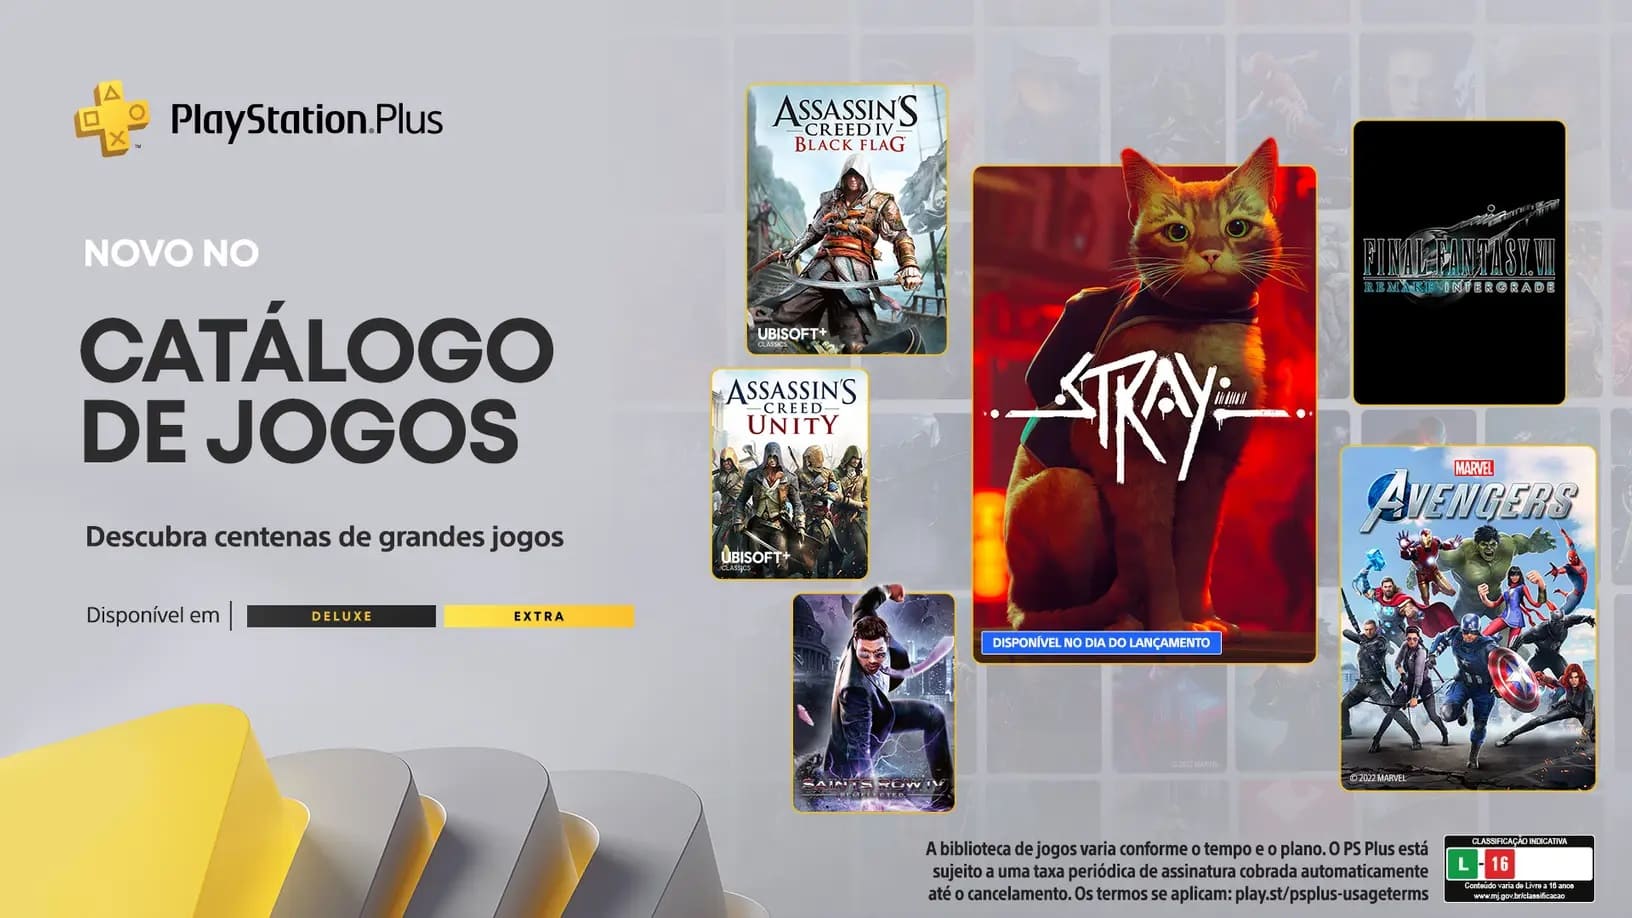 Stray  Jogo protagonizado por gato é lançado para PS4, PS5 e PC